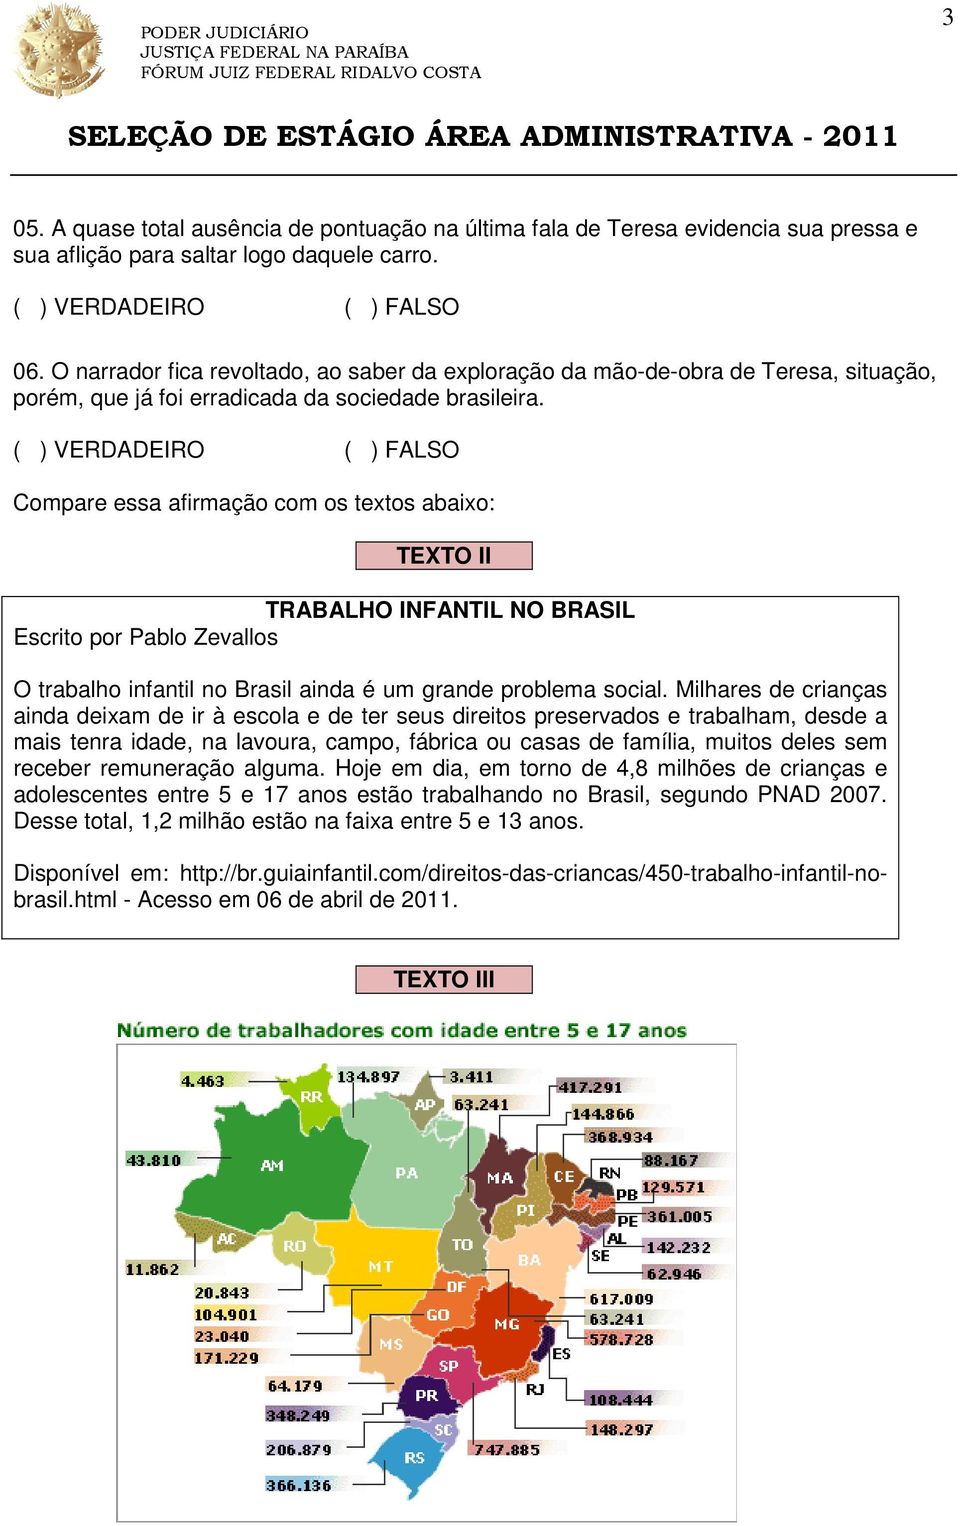 Compare essa afirmação com os textos abaixo: TEXTO II TRABALHO INFANTIL NO BRASIL Escrito por Pablo Zevallos O trabalho infantil no Brasil ainda é um grande problema social.